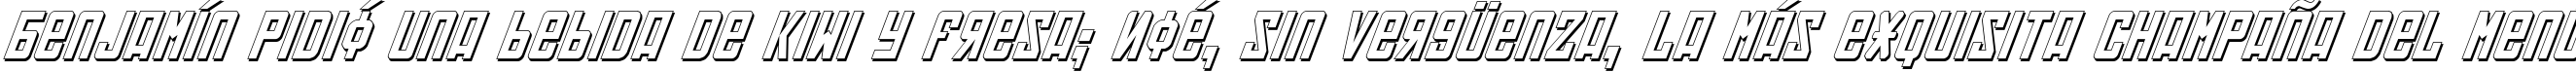 Пример написания шрифтом Soviet 3D Italic текста на испанском